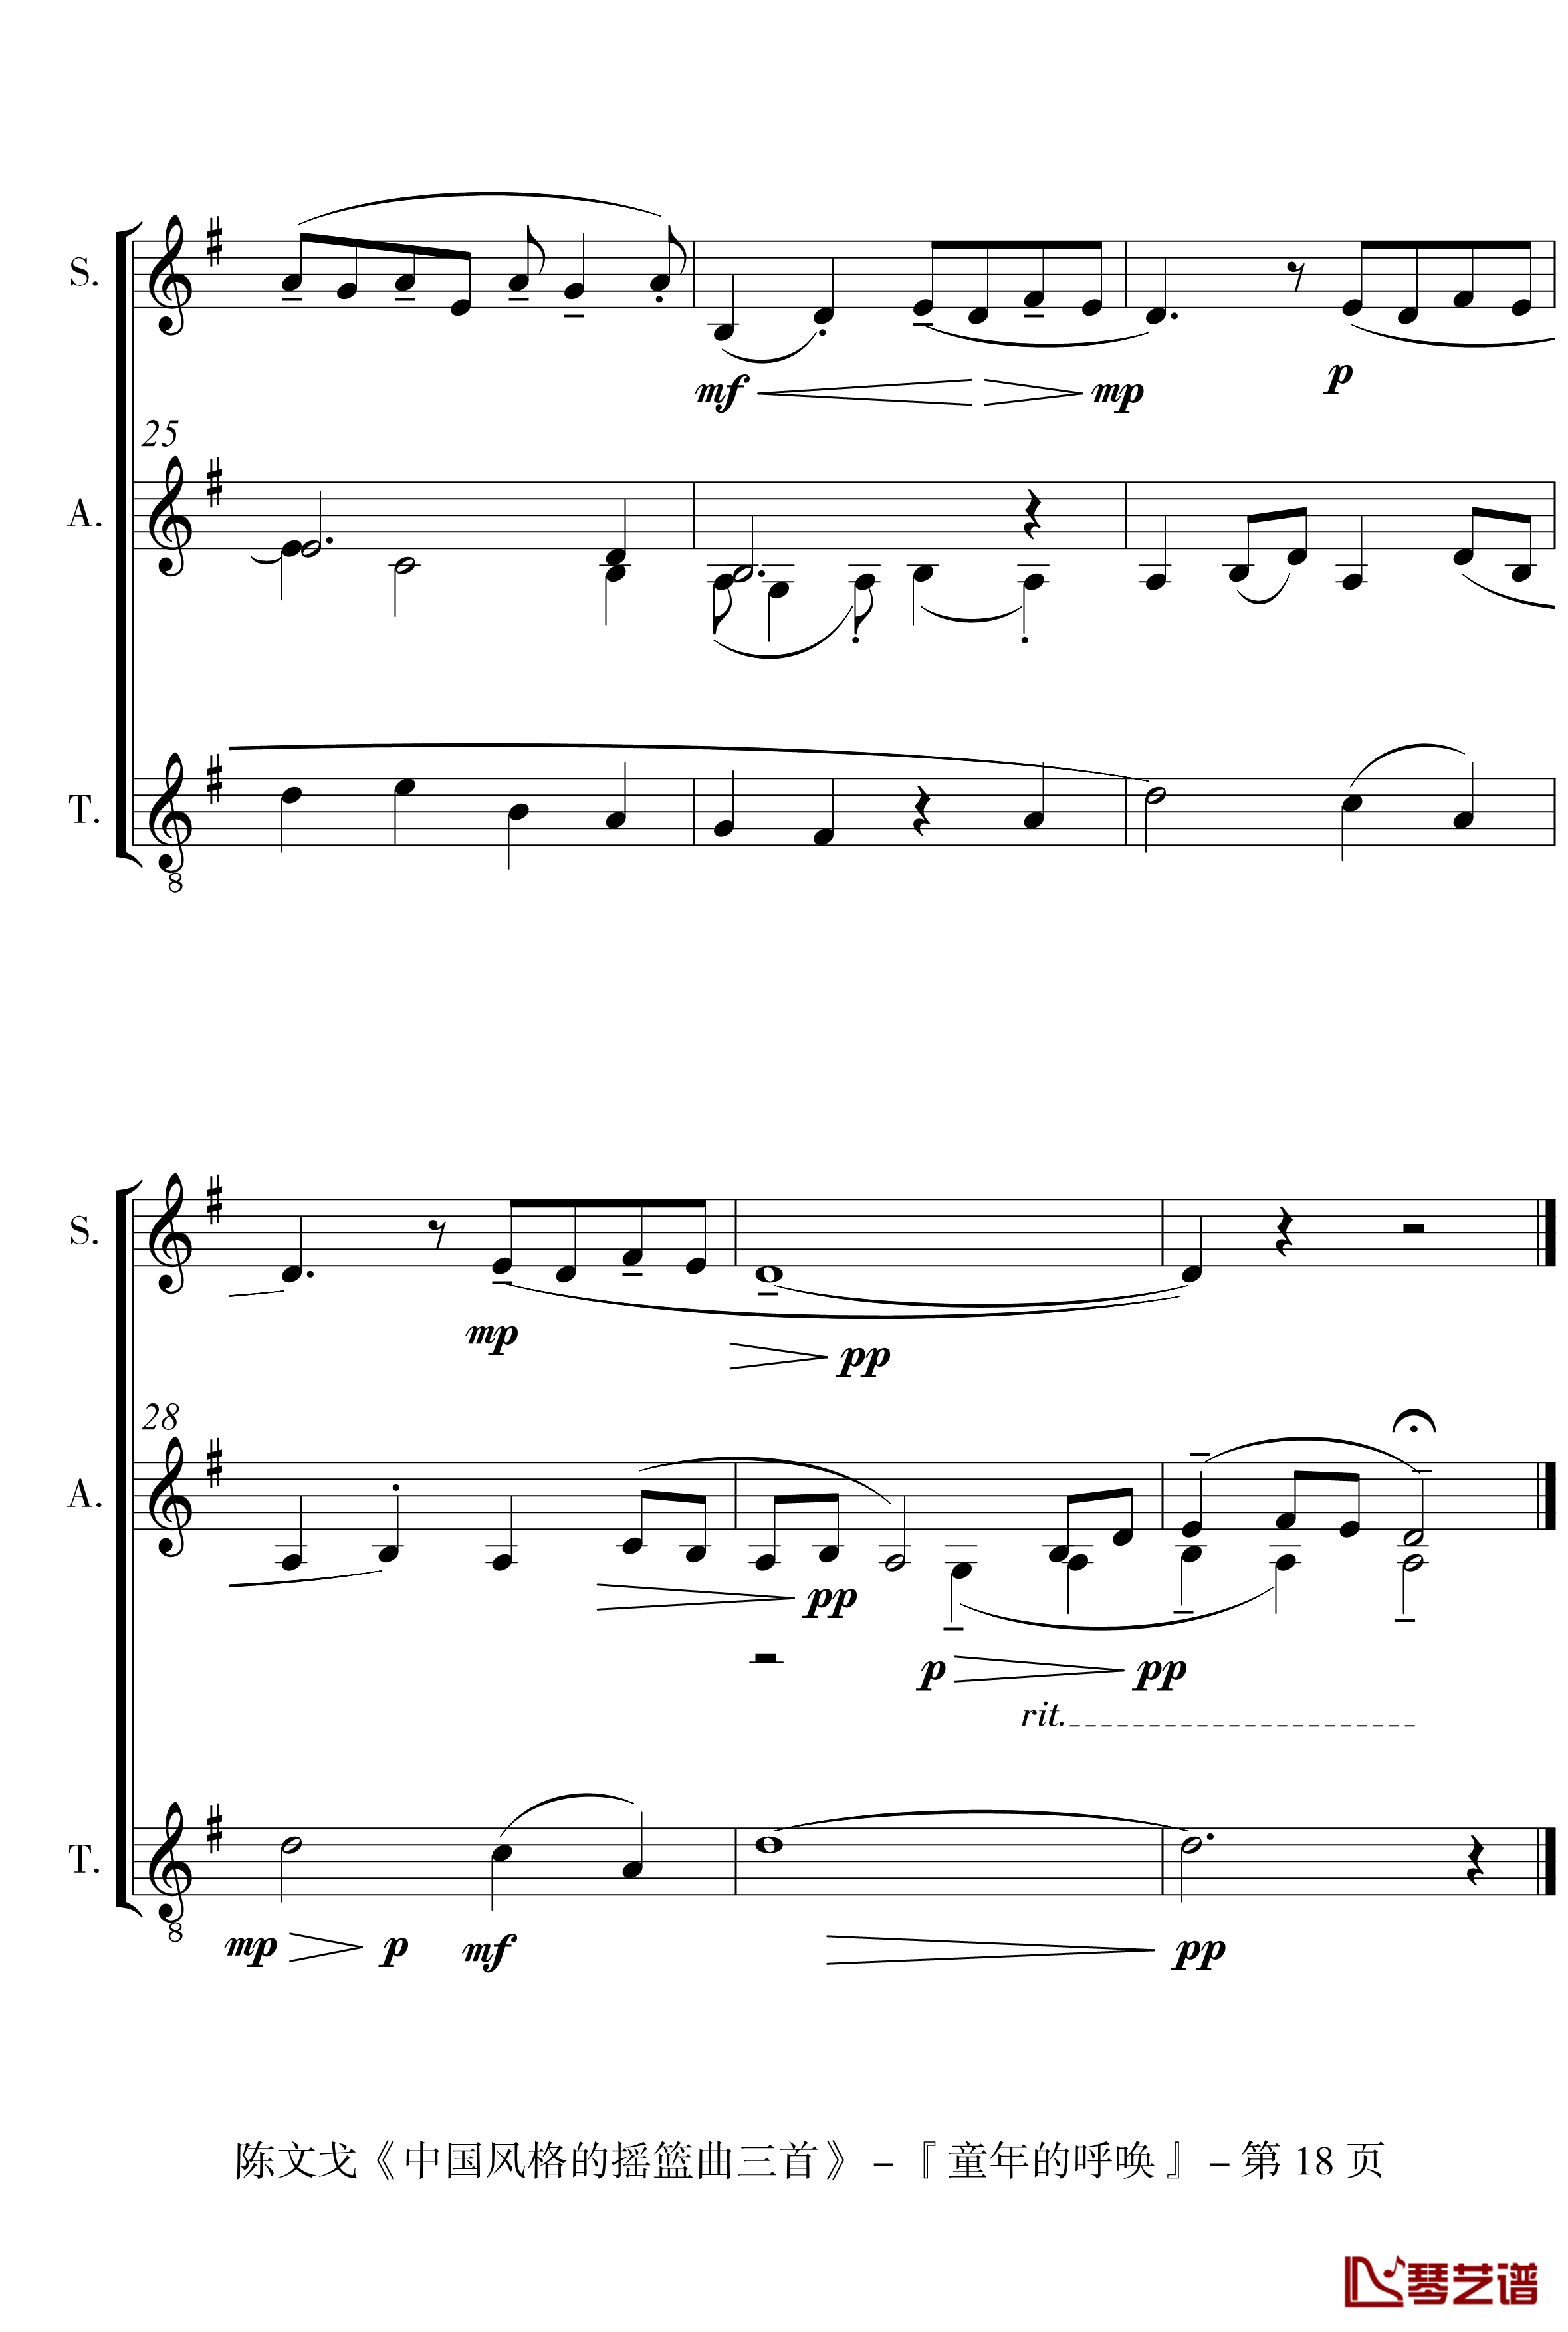 中国风格的合唱摇篮曲三首钢琴谱-I, II, III-陈文戈18